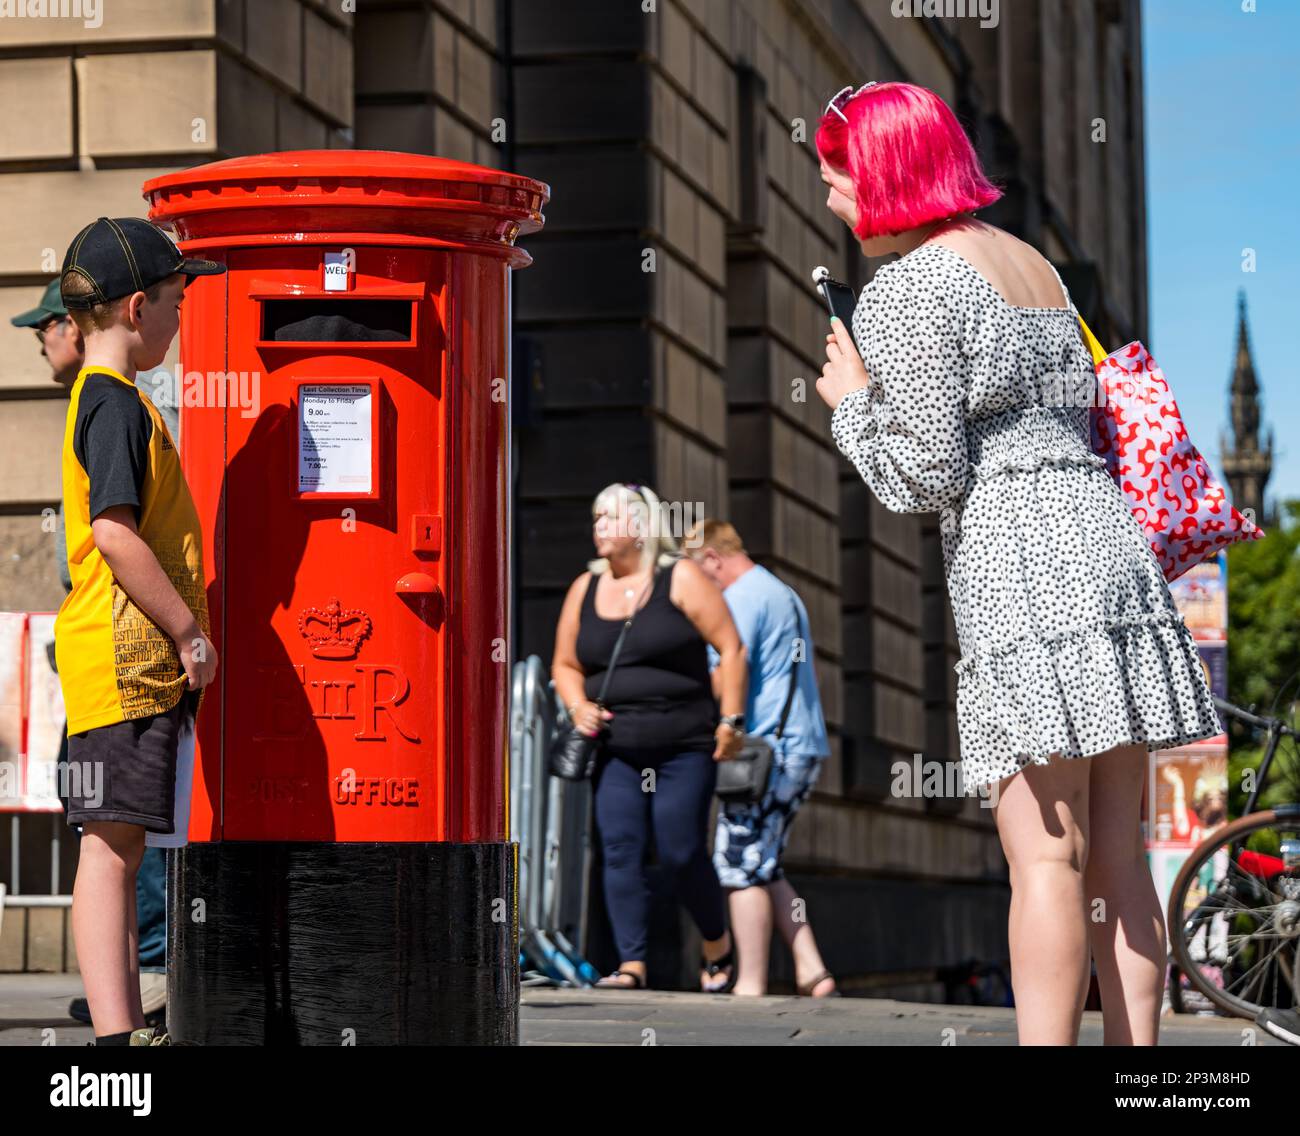 Les gens qui marchent devant et qui sont surpris par une fausse boîte postale parlante pendant le festival Fringe, Royal Mile, Édimbourg, Écosse, Royaume-Uni Banque D'Images